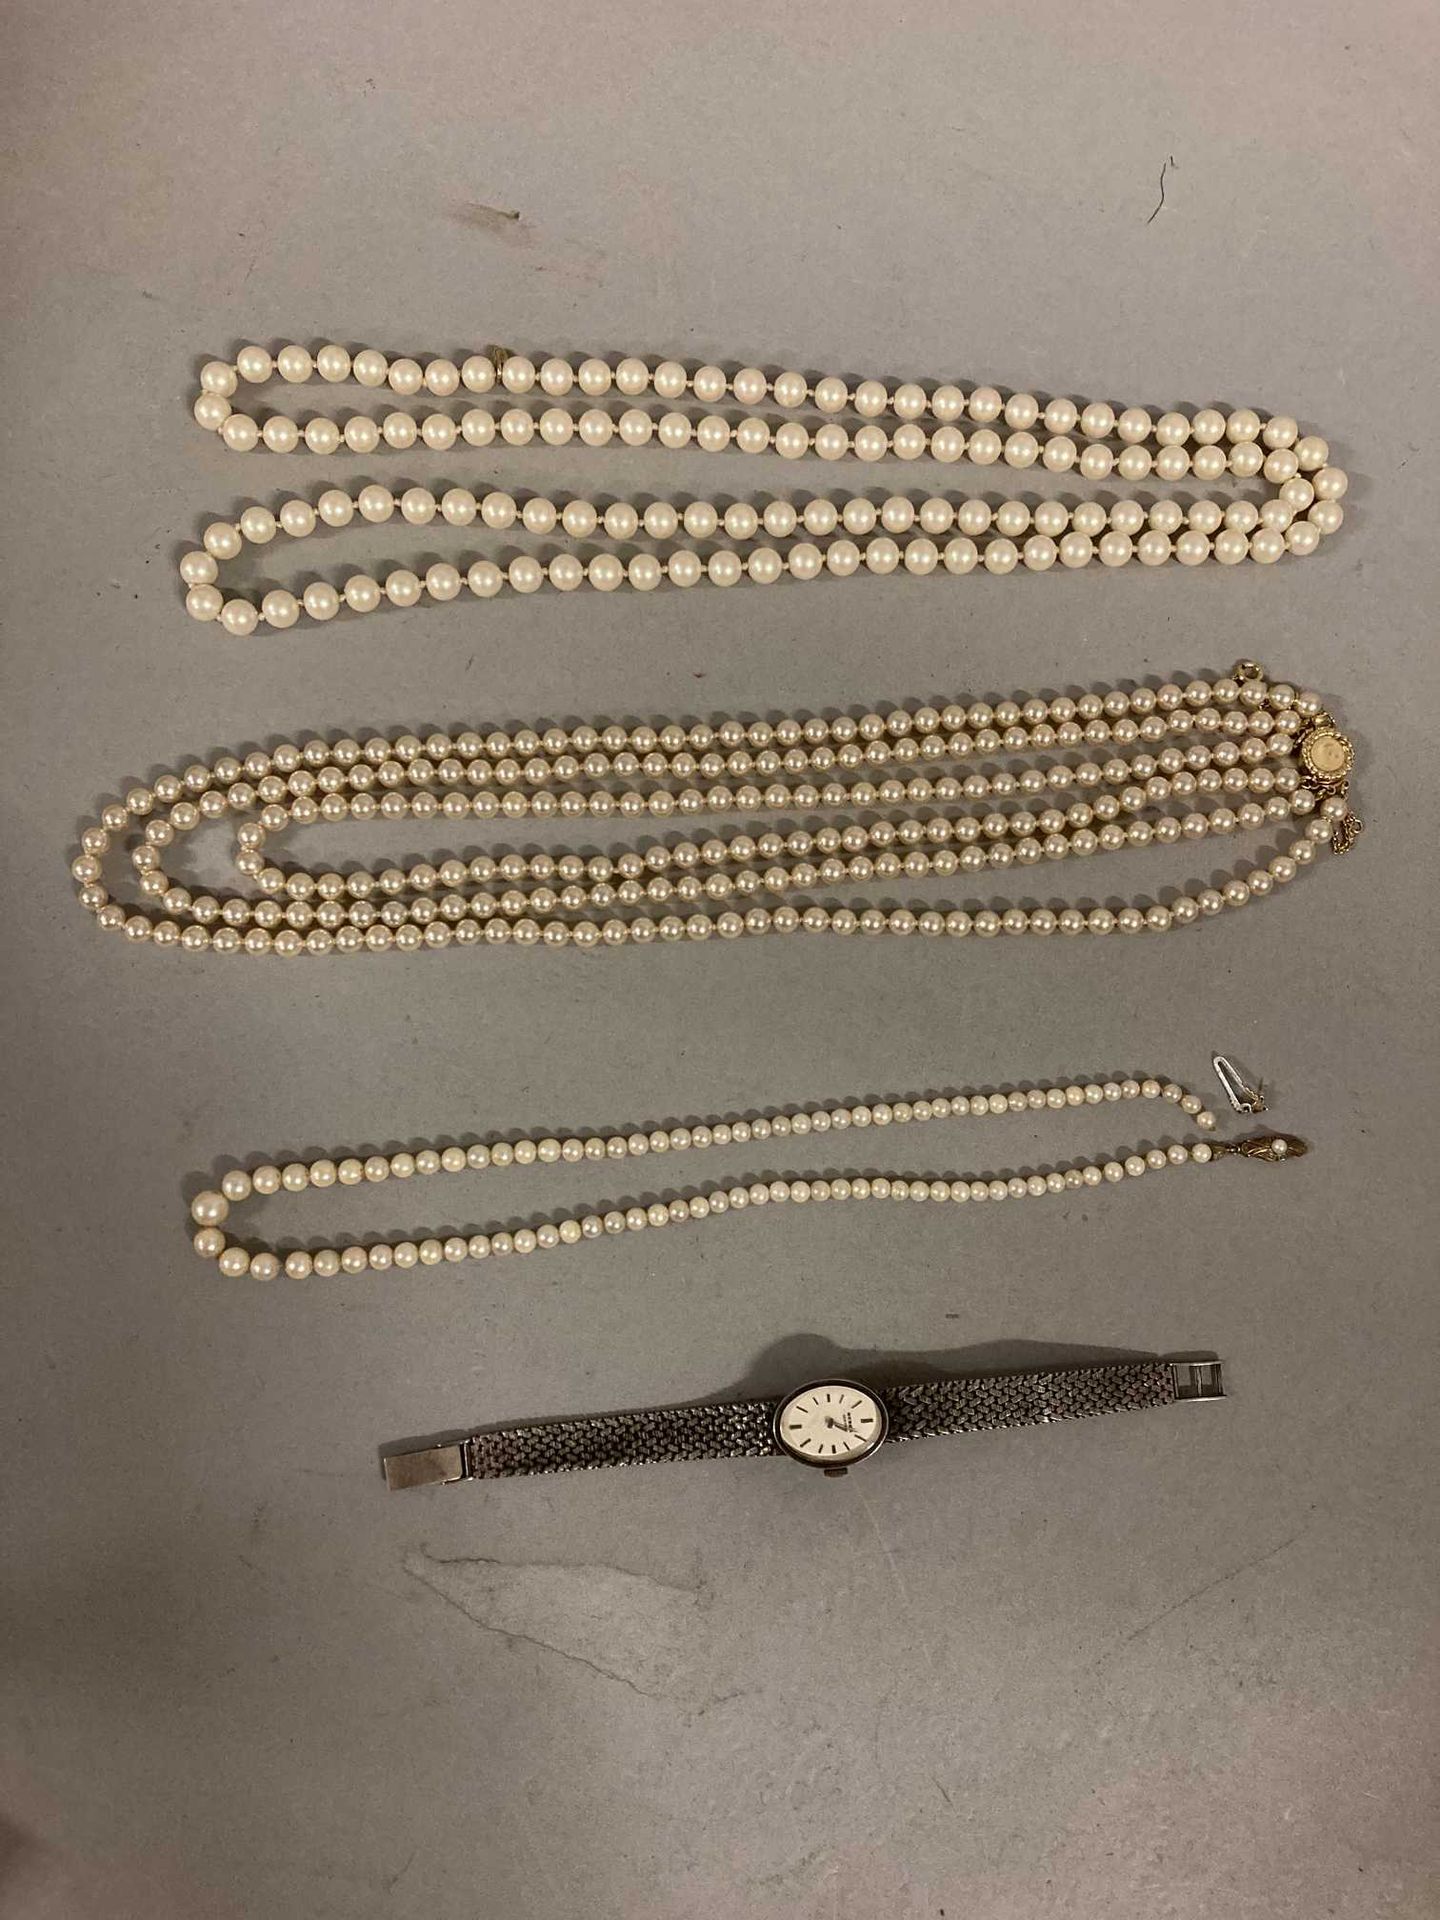 Null Un collar de perlas (cierre roto)

un collar con tres filas de perlas, un c&hellip;